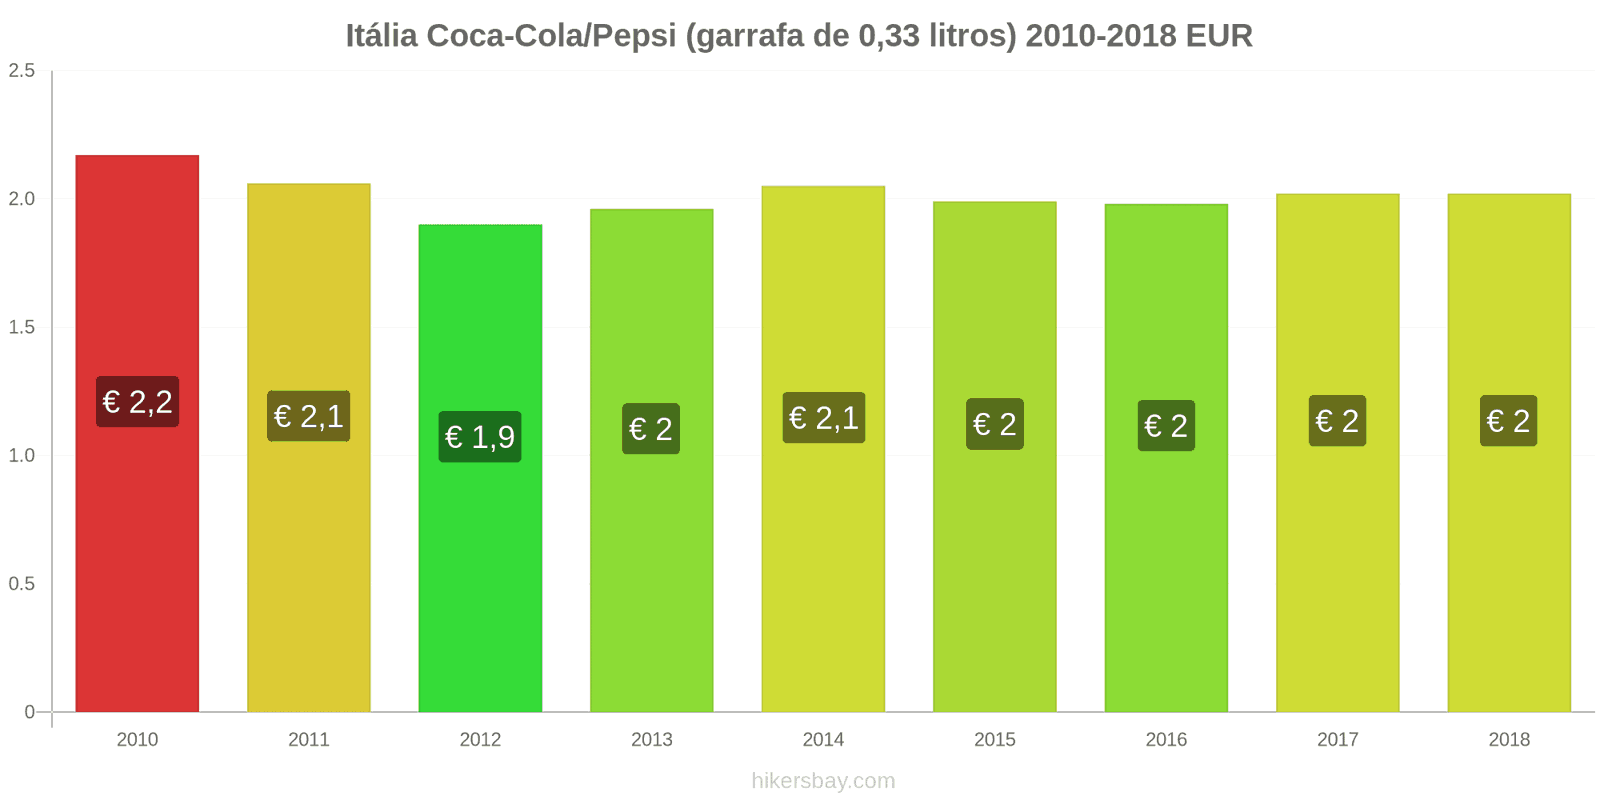 Itália mudanças de preços Coca-Cola/Pepsi (garrafa de 0.33 litros) hikersbay.com